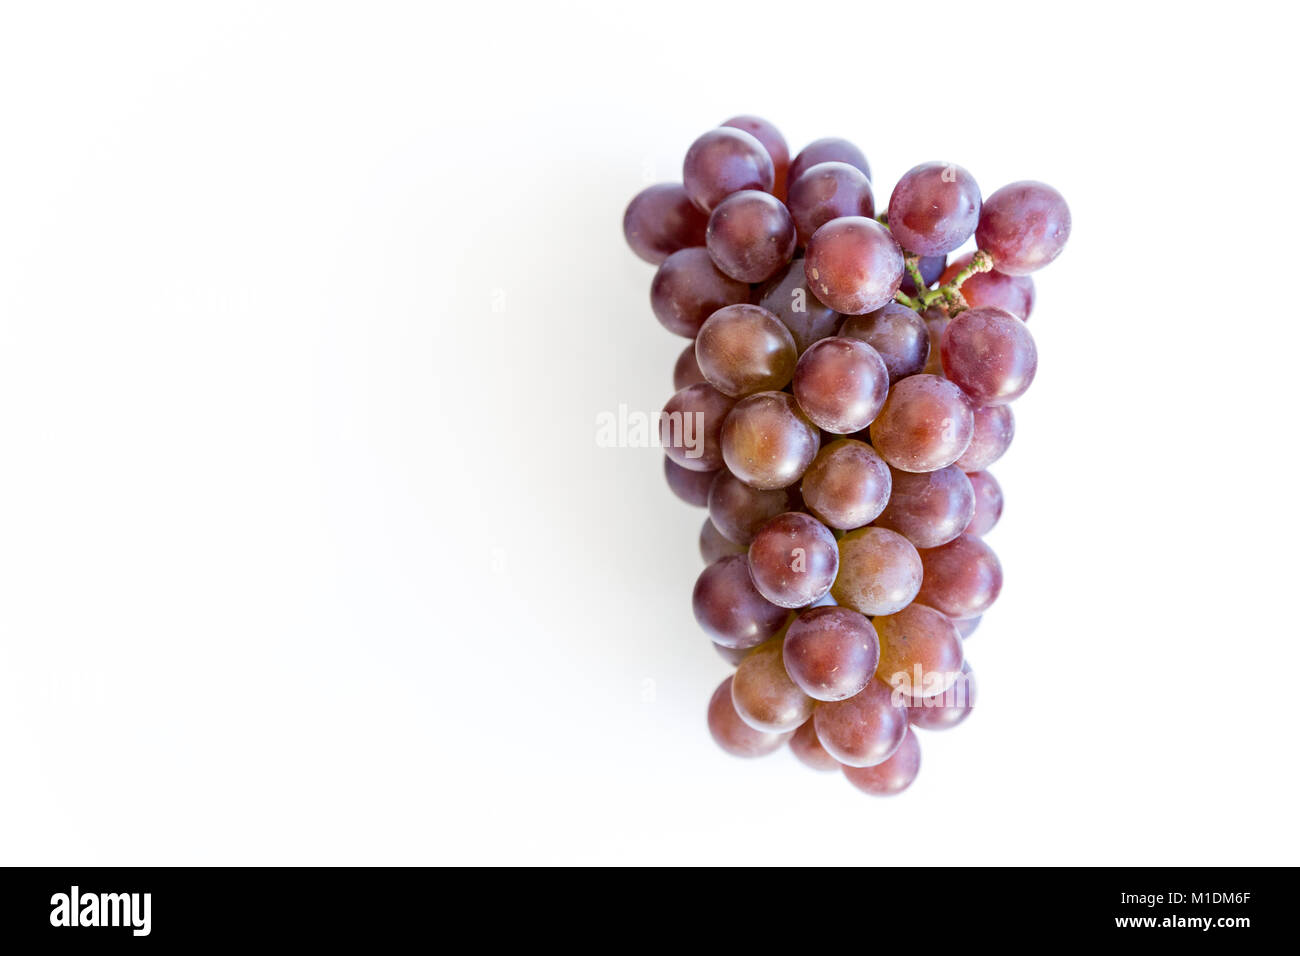 Tas de raisins rouges mûrs isolé sur fond blanc, télévision lay Banque D'Images